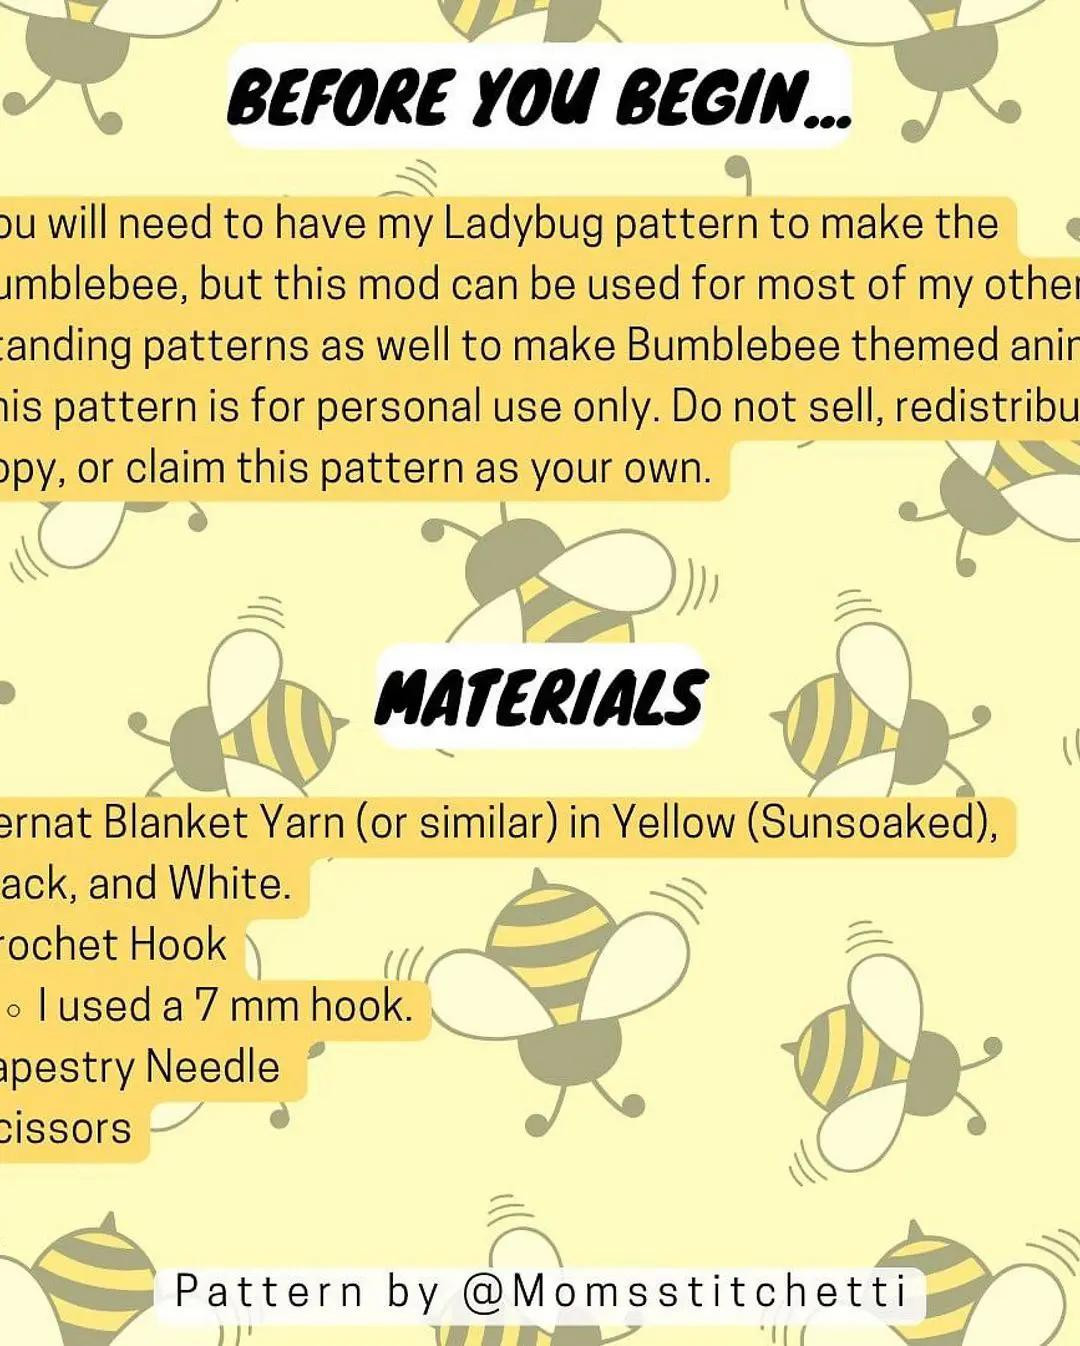 bumblebee mod crochet pattern